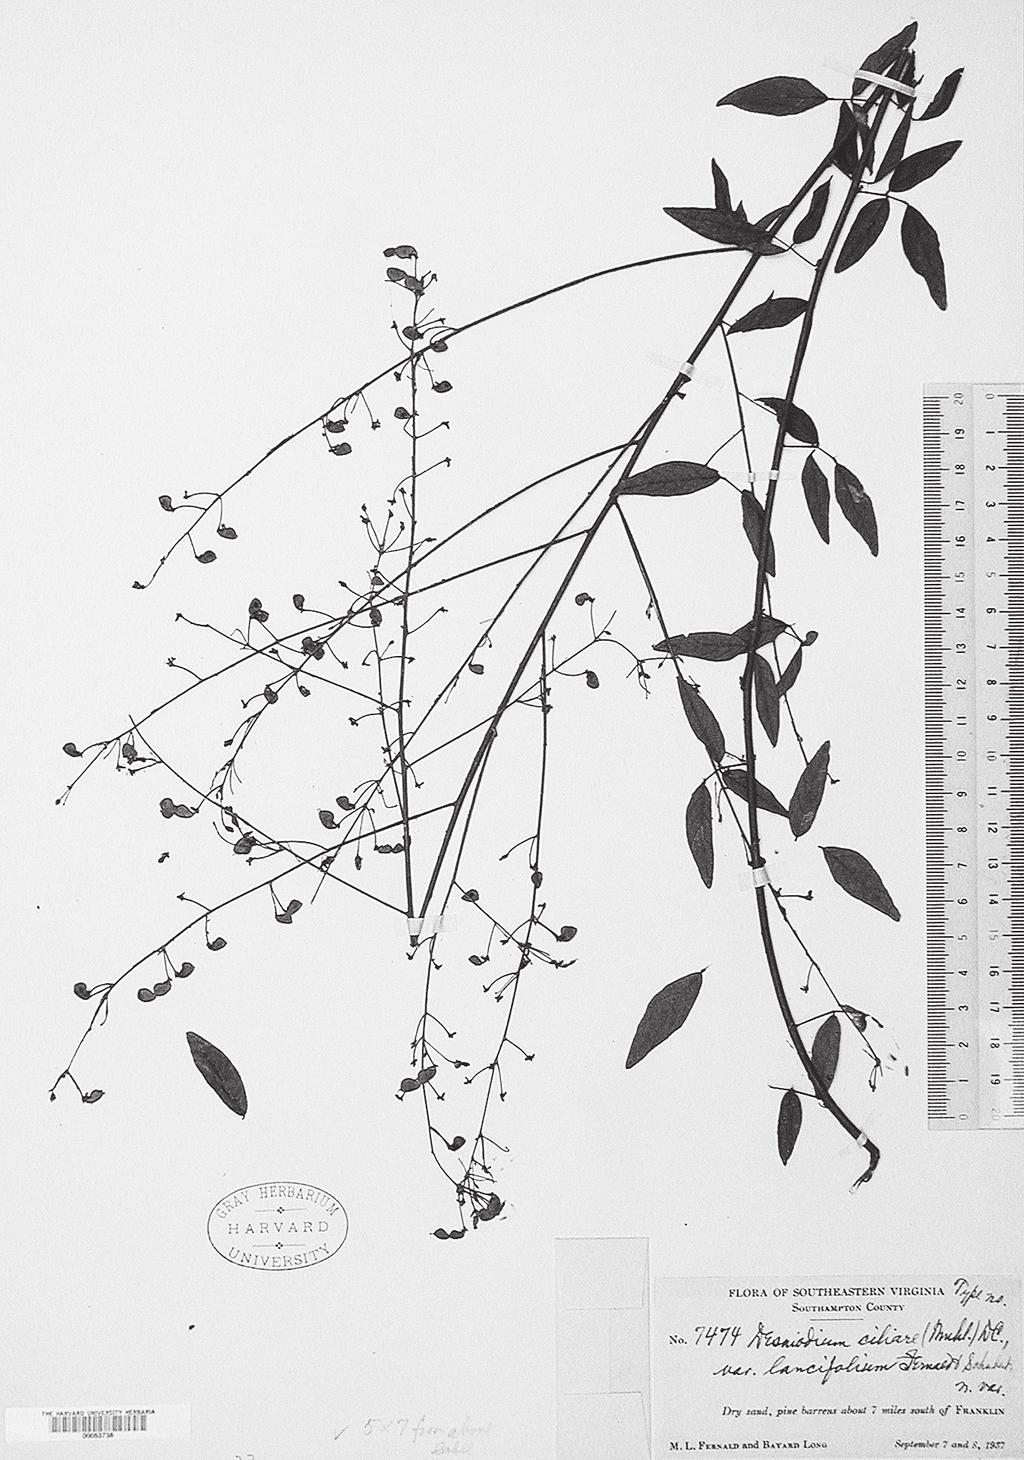 168 植物研究雑誌第 88 巻第 3 号 2013 年 6 月 Fig. 1.